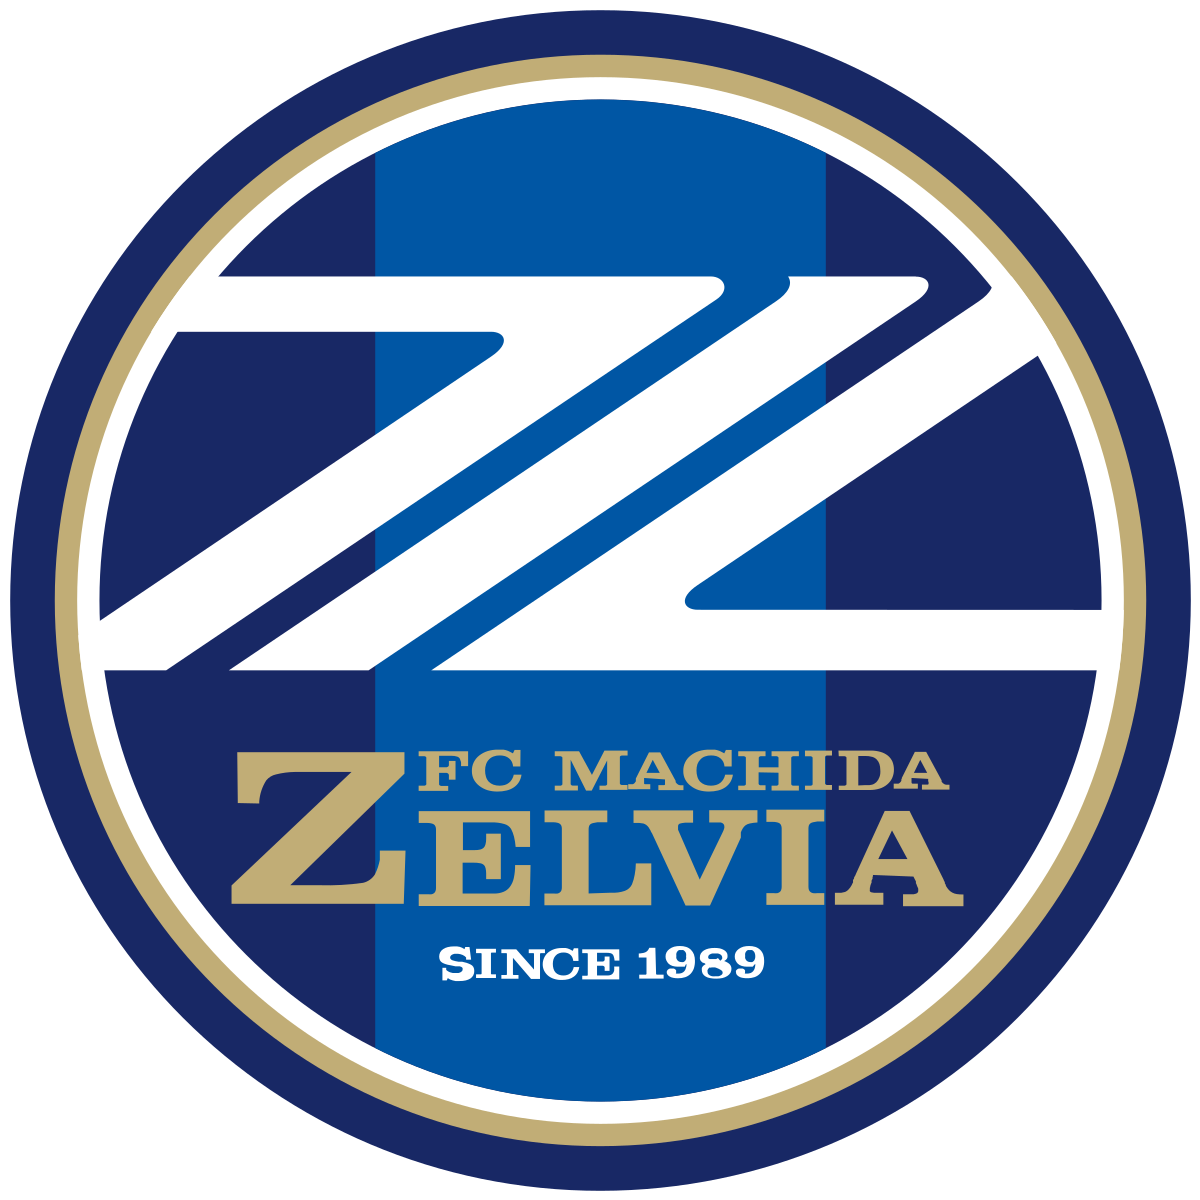 Wappen FC Machida Zelvia